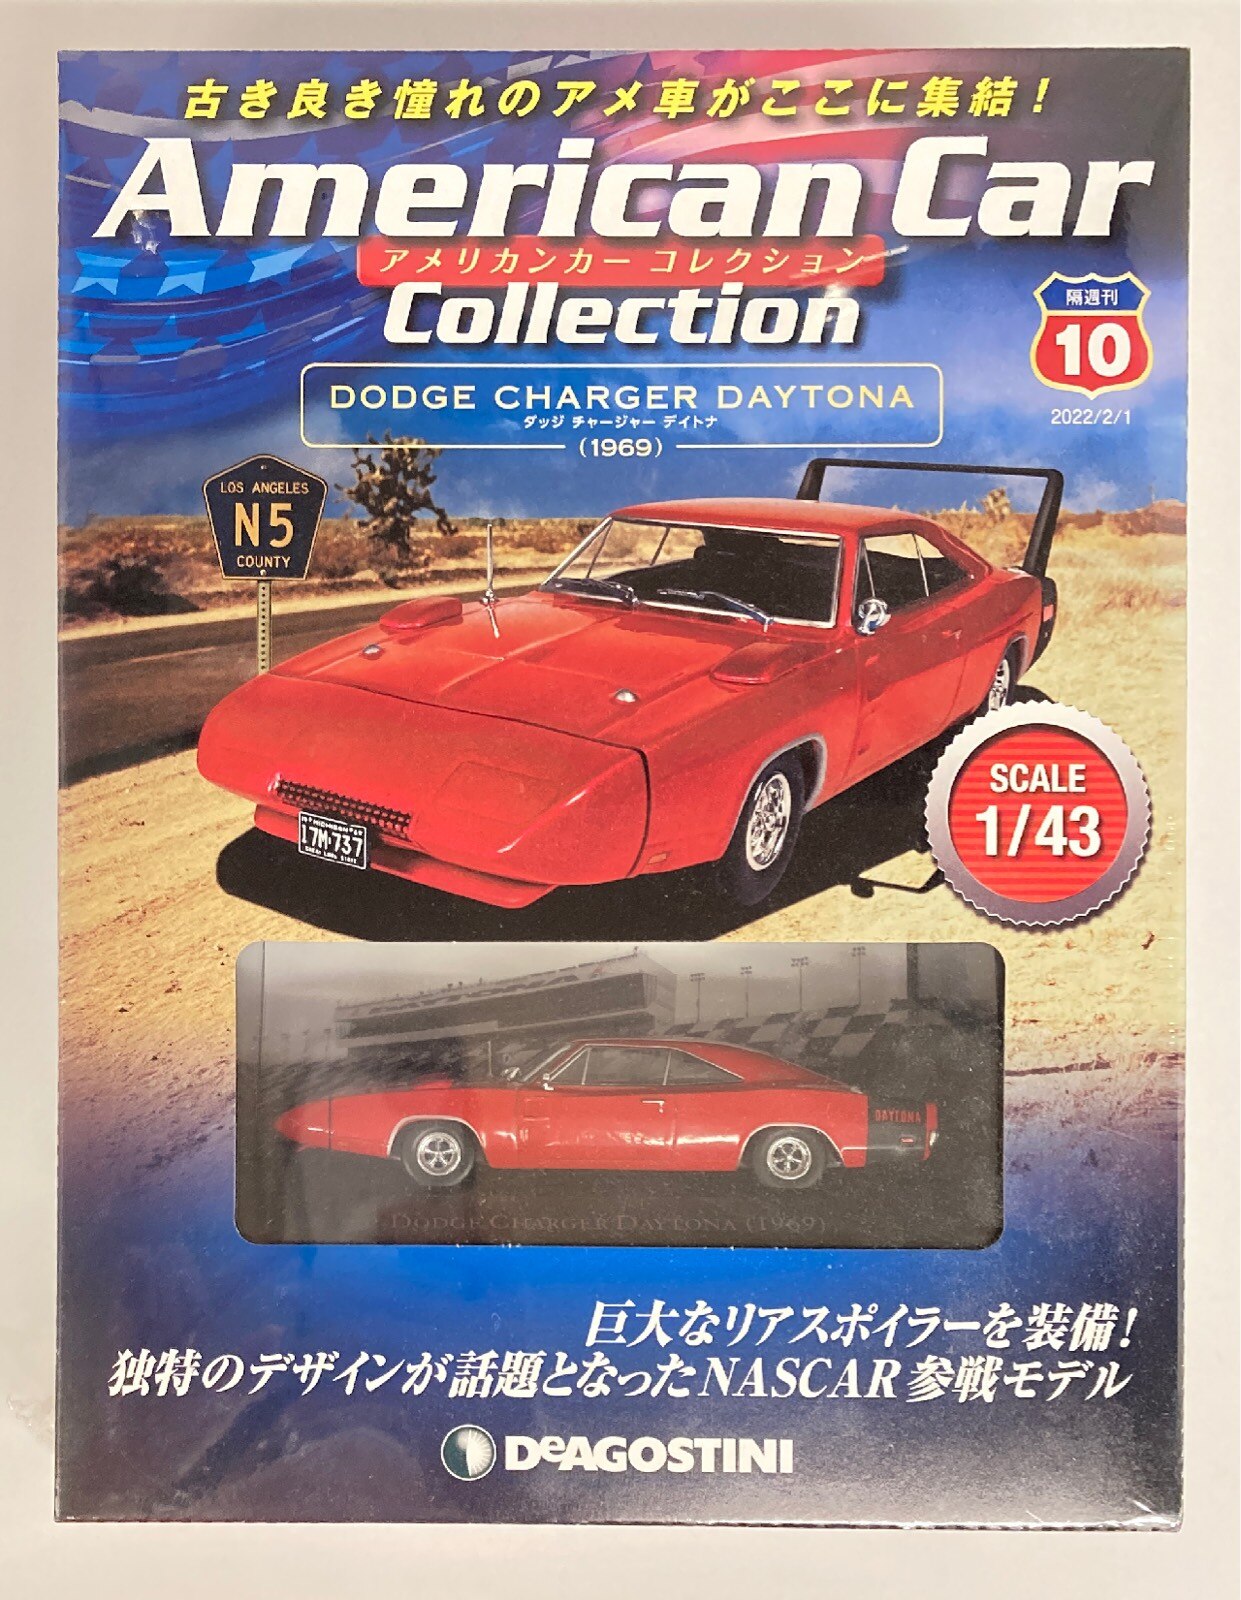 Online　Shop　1/43　Car　10　American　1969　DAYTONA　Collection　CHALLENGER　DODGE　Mandarake　De　Agostini